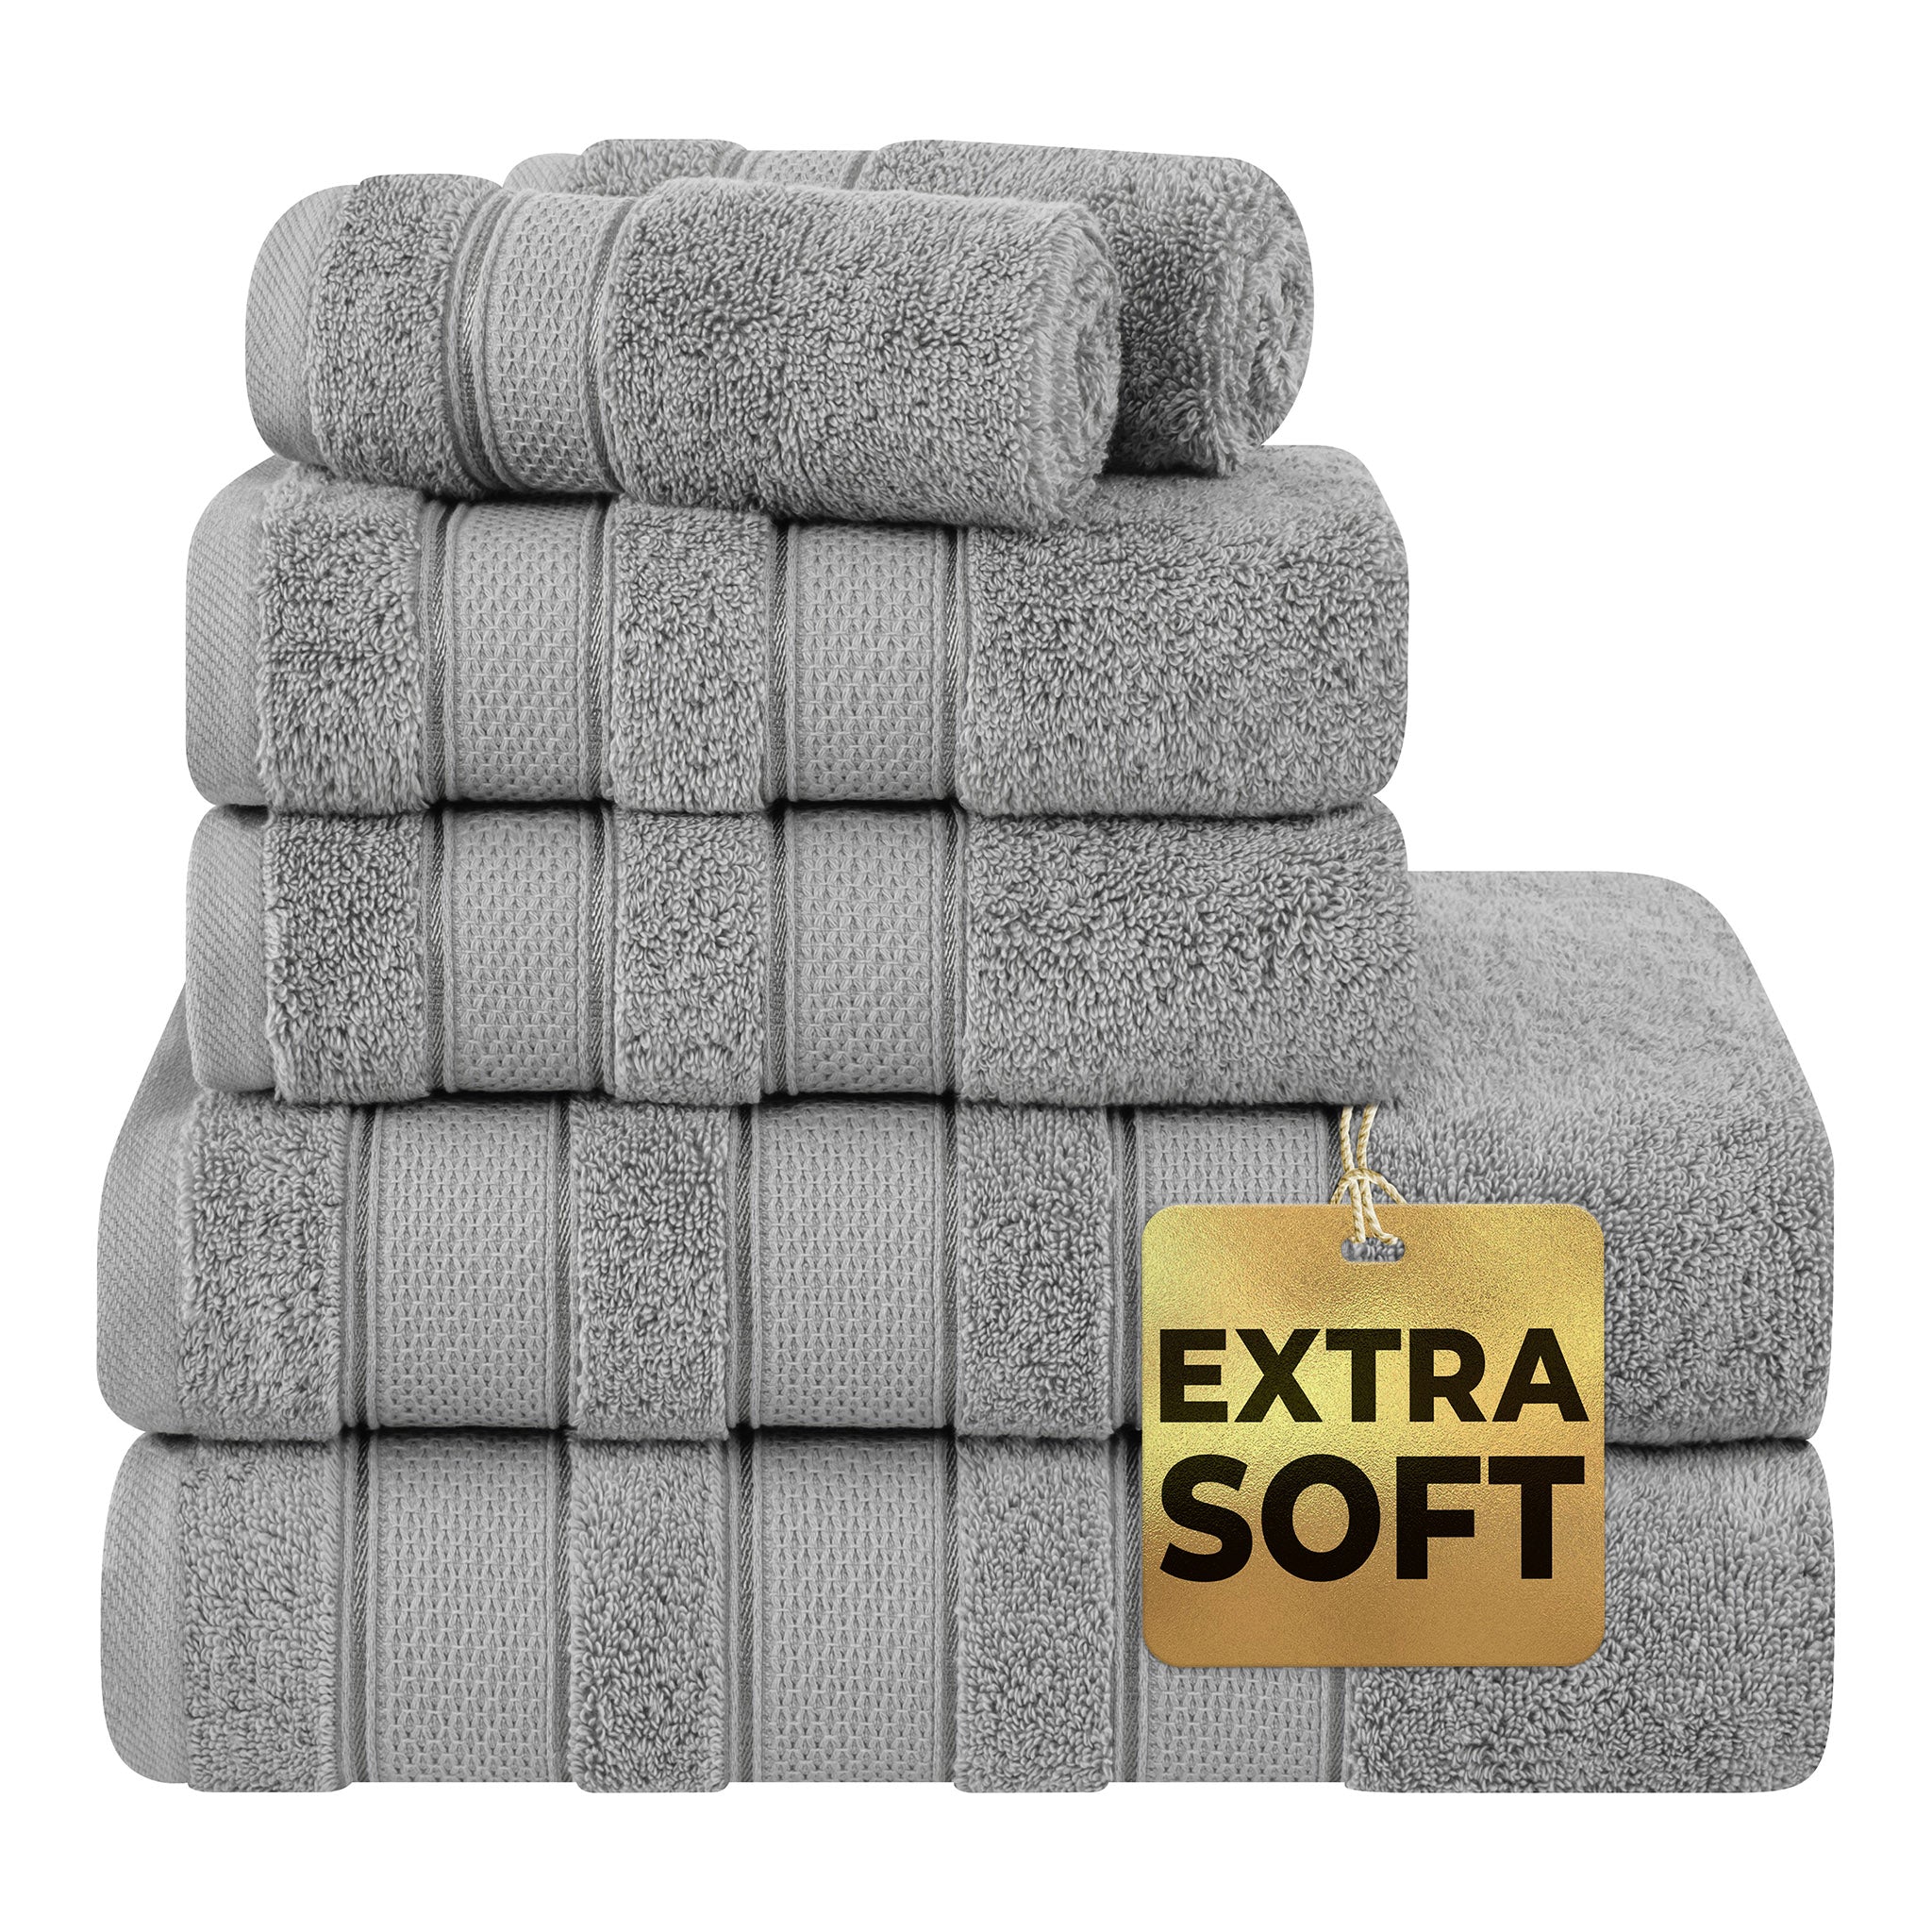 Utopia Towels 8 Piece Towel Set 2 Bath Towels, 2 Hand Towels and 4